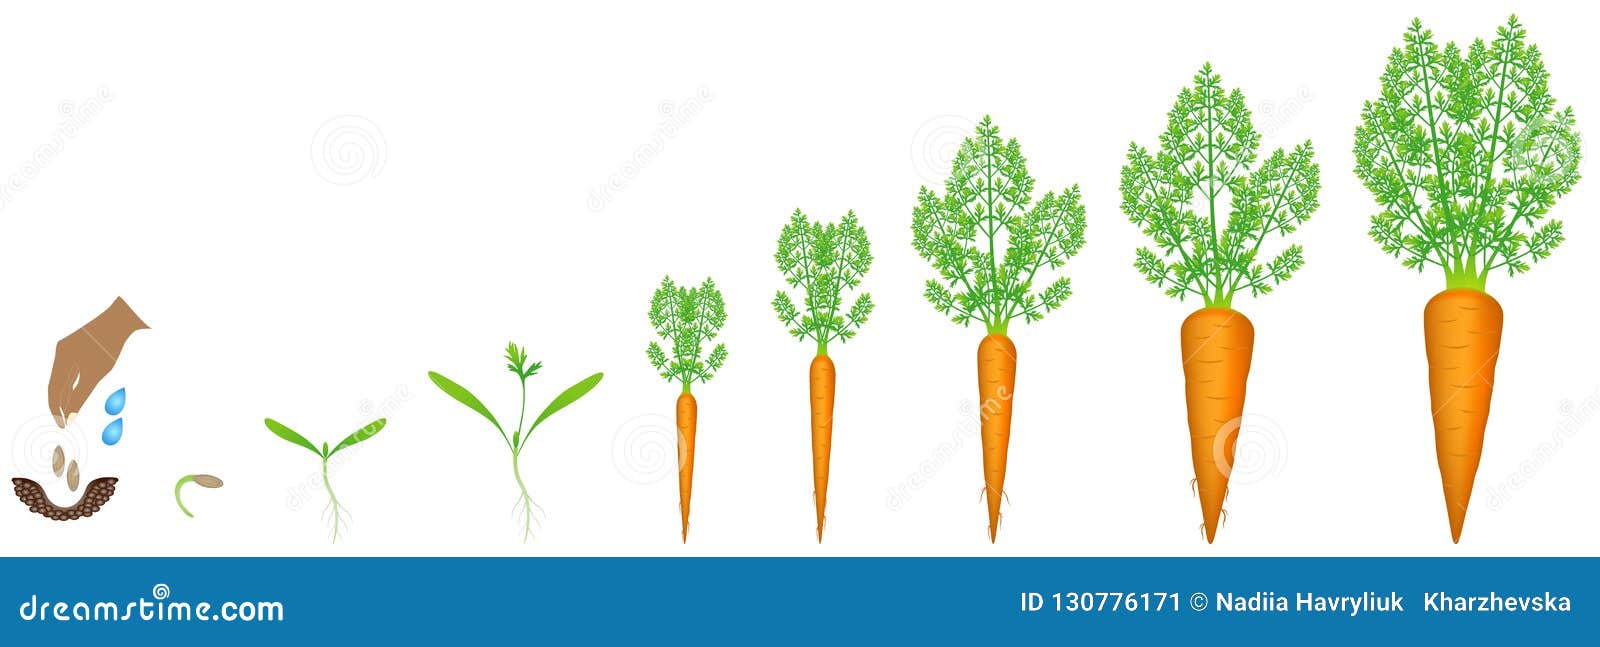 Морковь группа растений